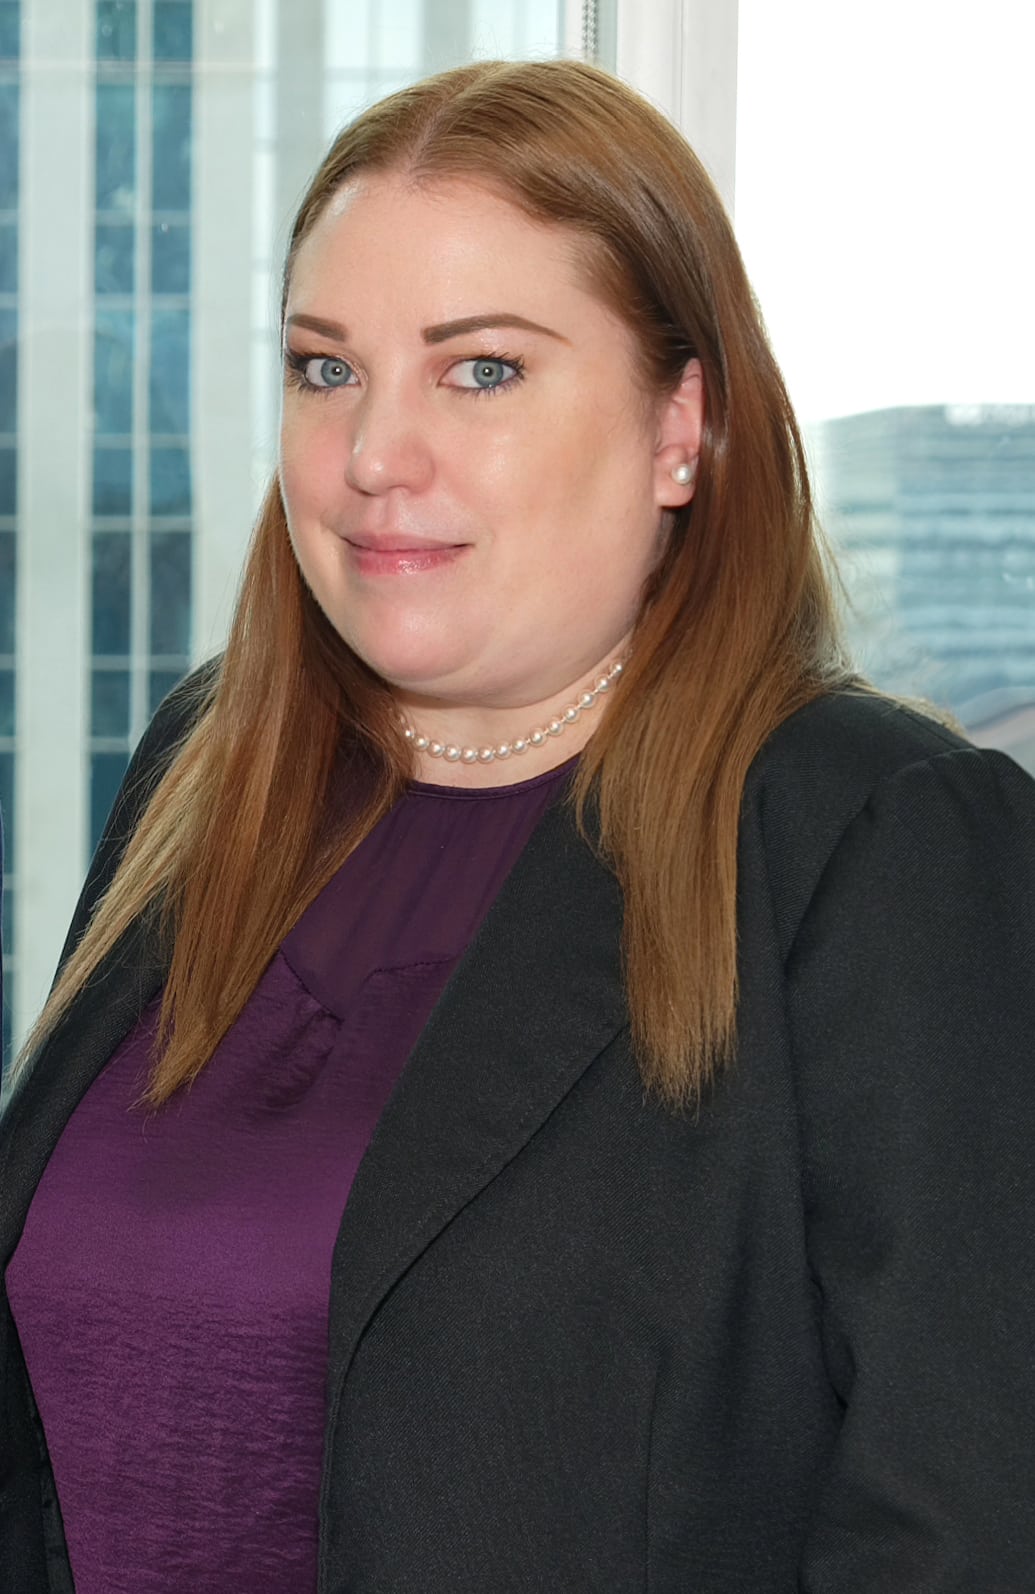 Christina Hamp - Criminal Defence Lawyer at Karapancev Law Criminal Defence Law Firm in Toronto